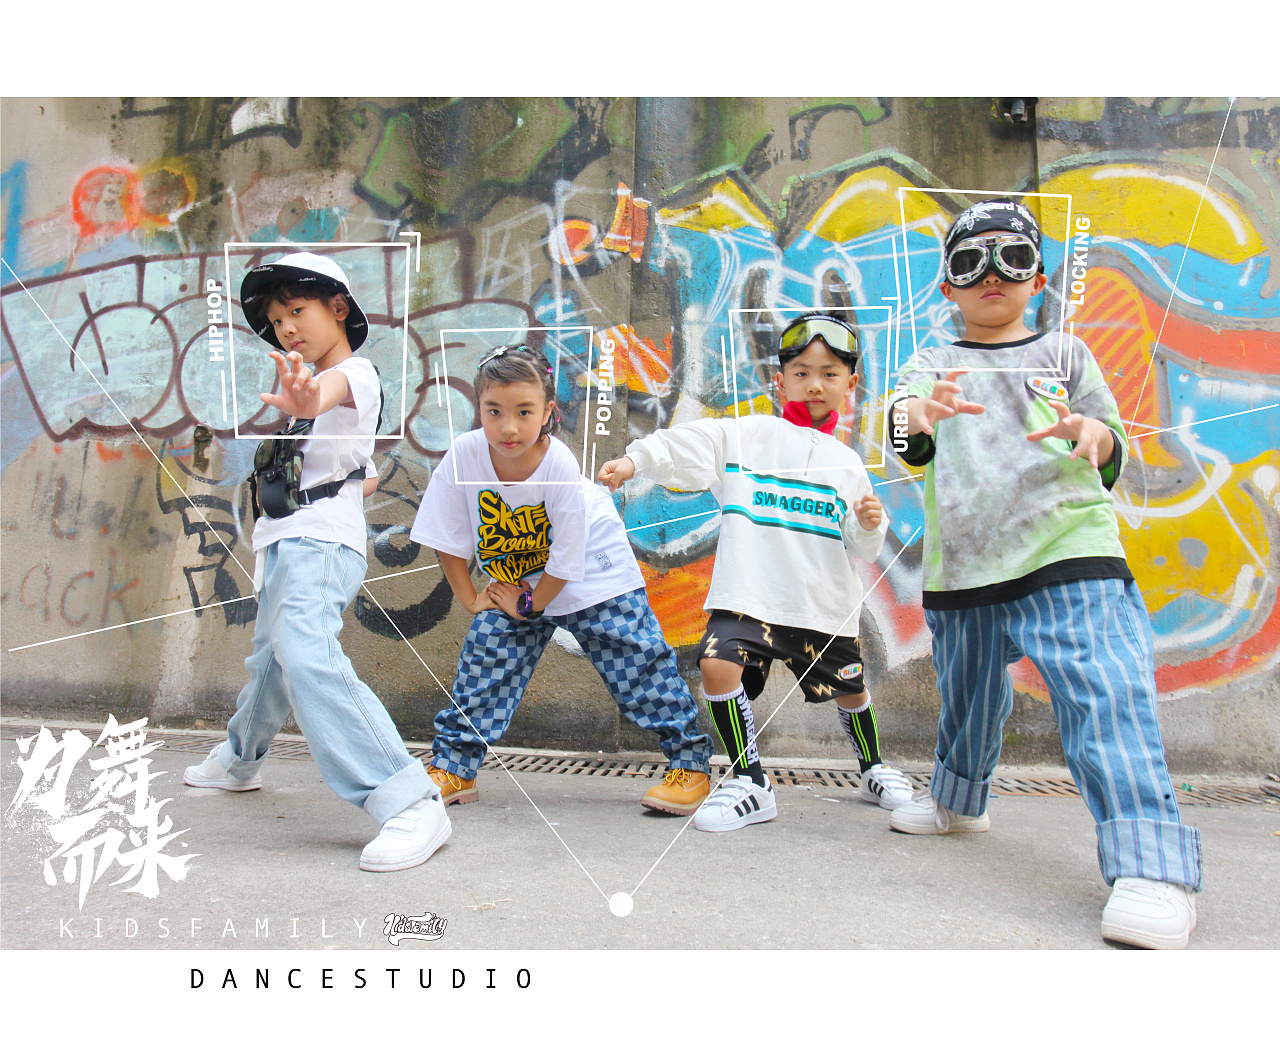 即享照片回顾玖叁街舞国泰艺术中心年度大秀 小朋友们个性乔装舞出精彩